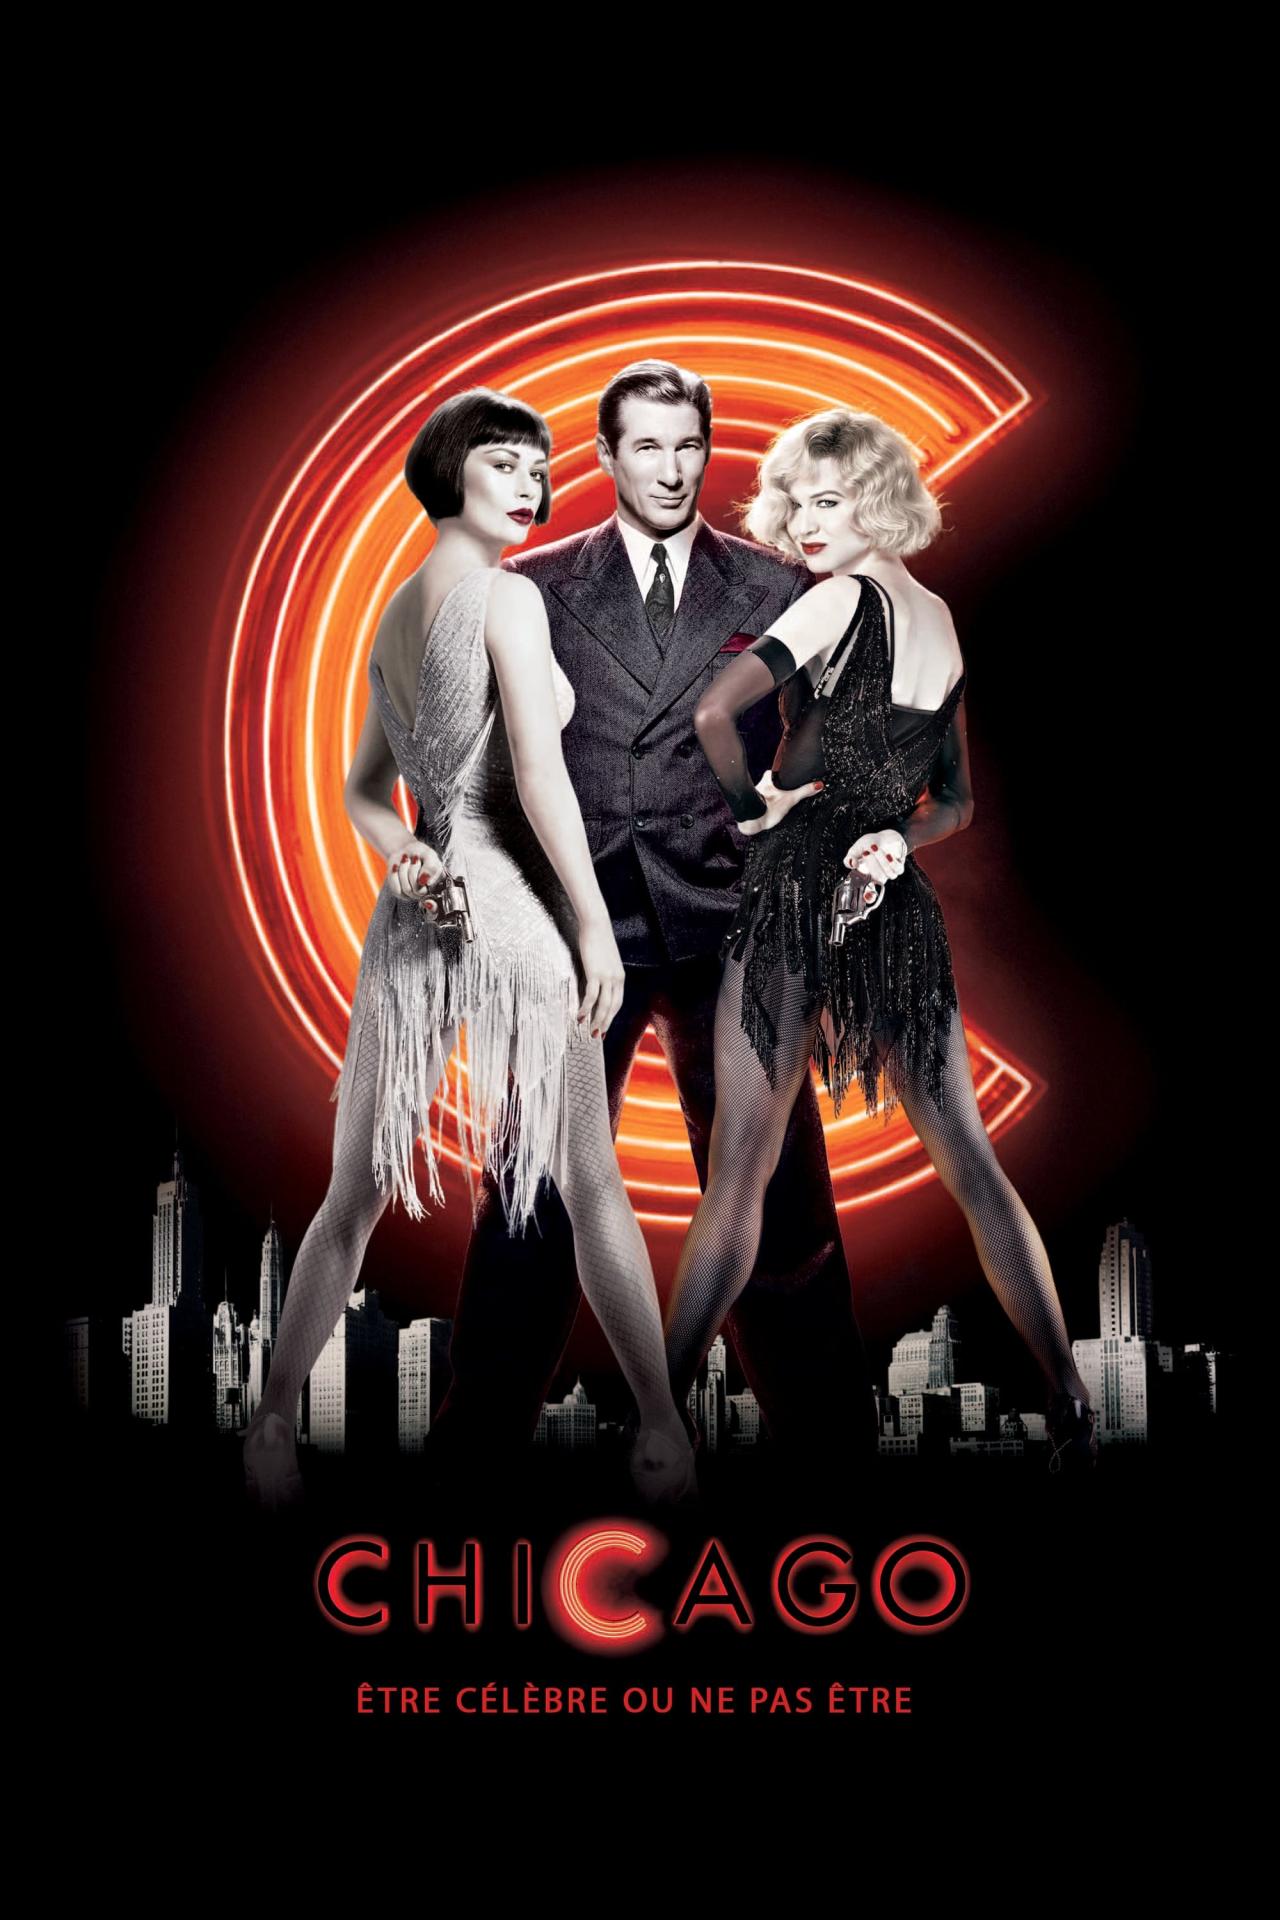 Affiche du film Chicago